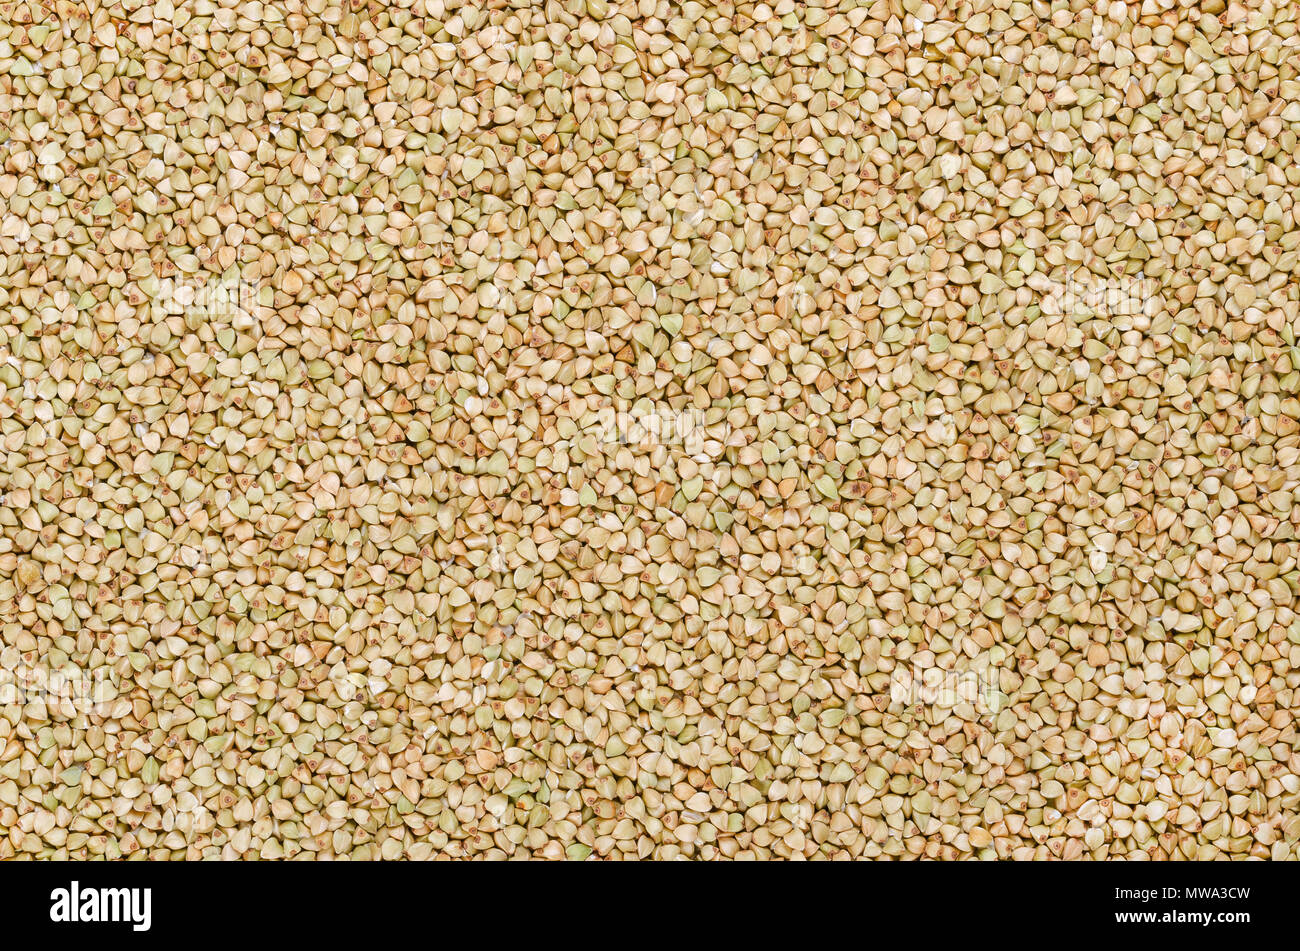 El alforfón común granos mondados, la superficie y el fondo. Sin Gluten pseudocereal. Fagopyrum esculentum, también conocido como Japonés o silverhull alforfón Foto de stock